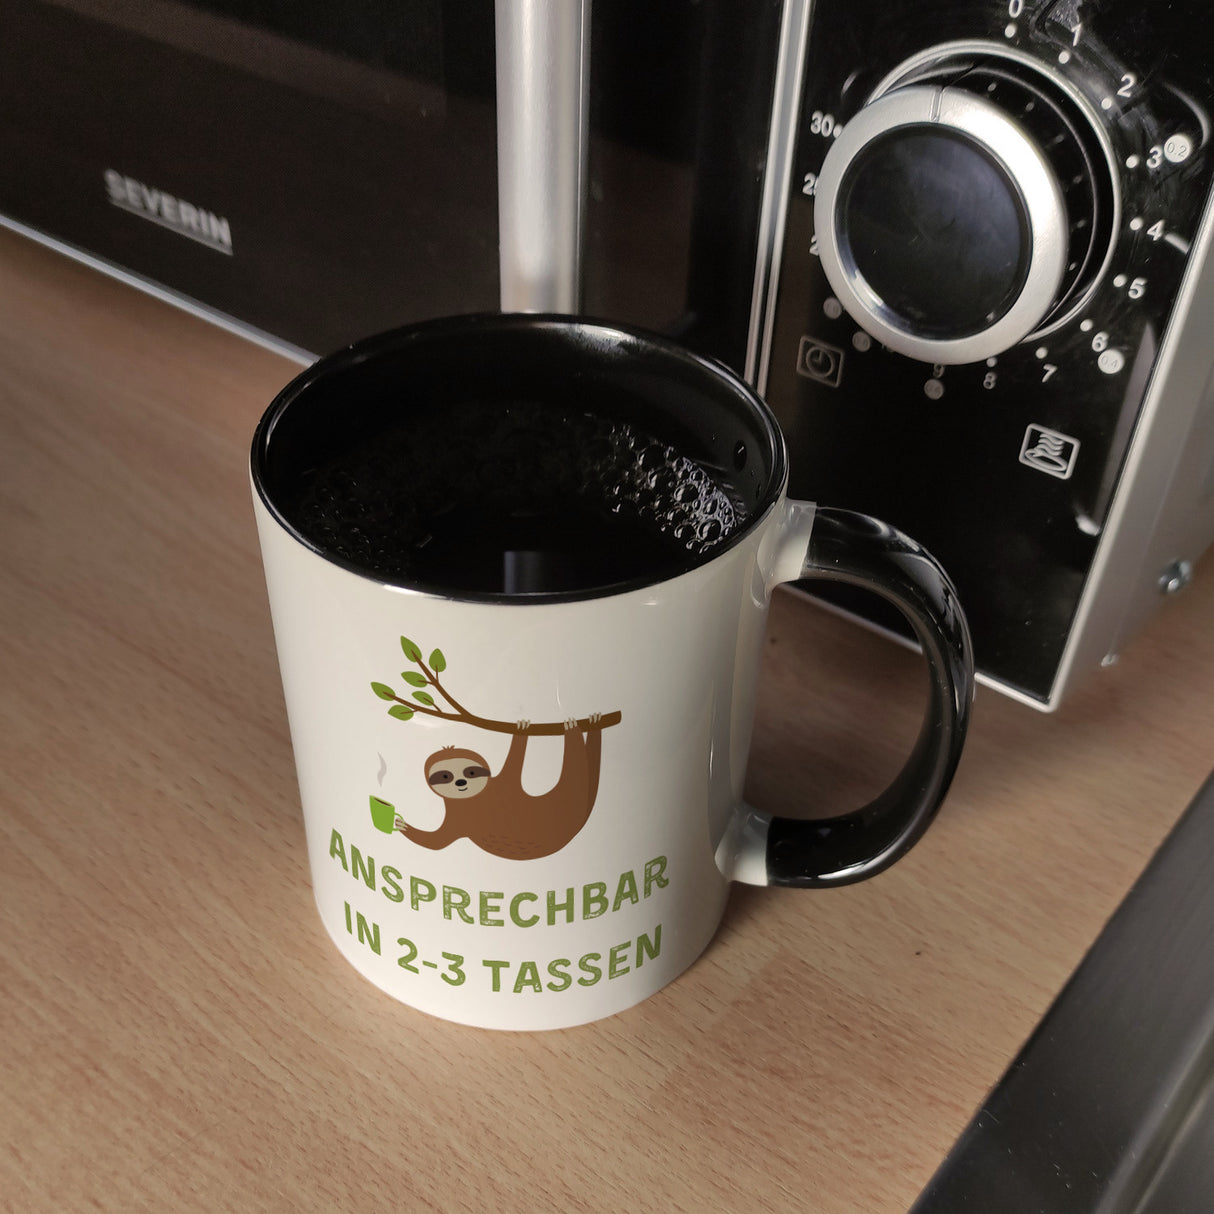 Faultier mit Kaffee Kaffeebecher mit Spruch Ansprechbar in 2-3 Tassen